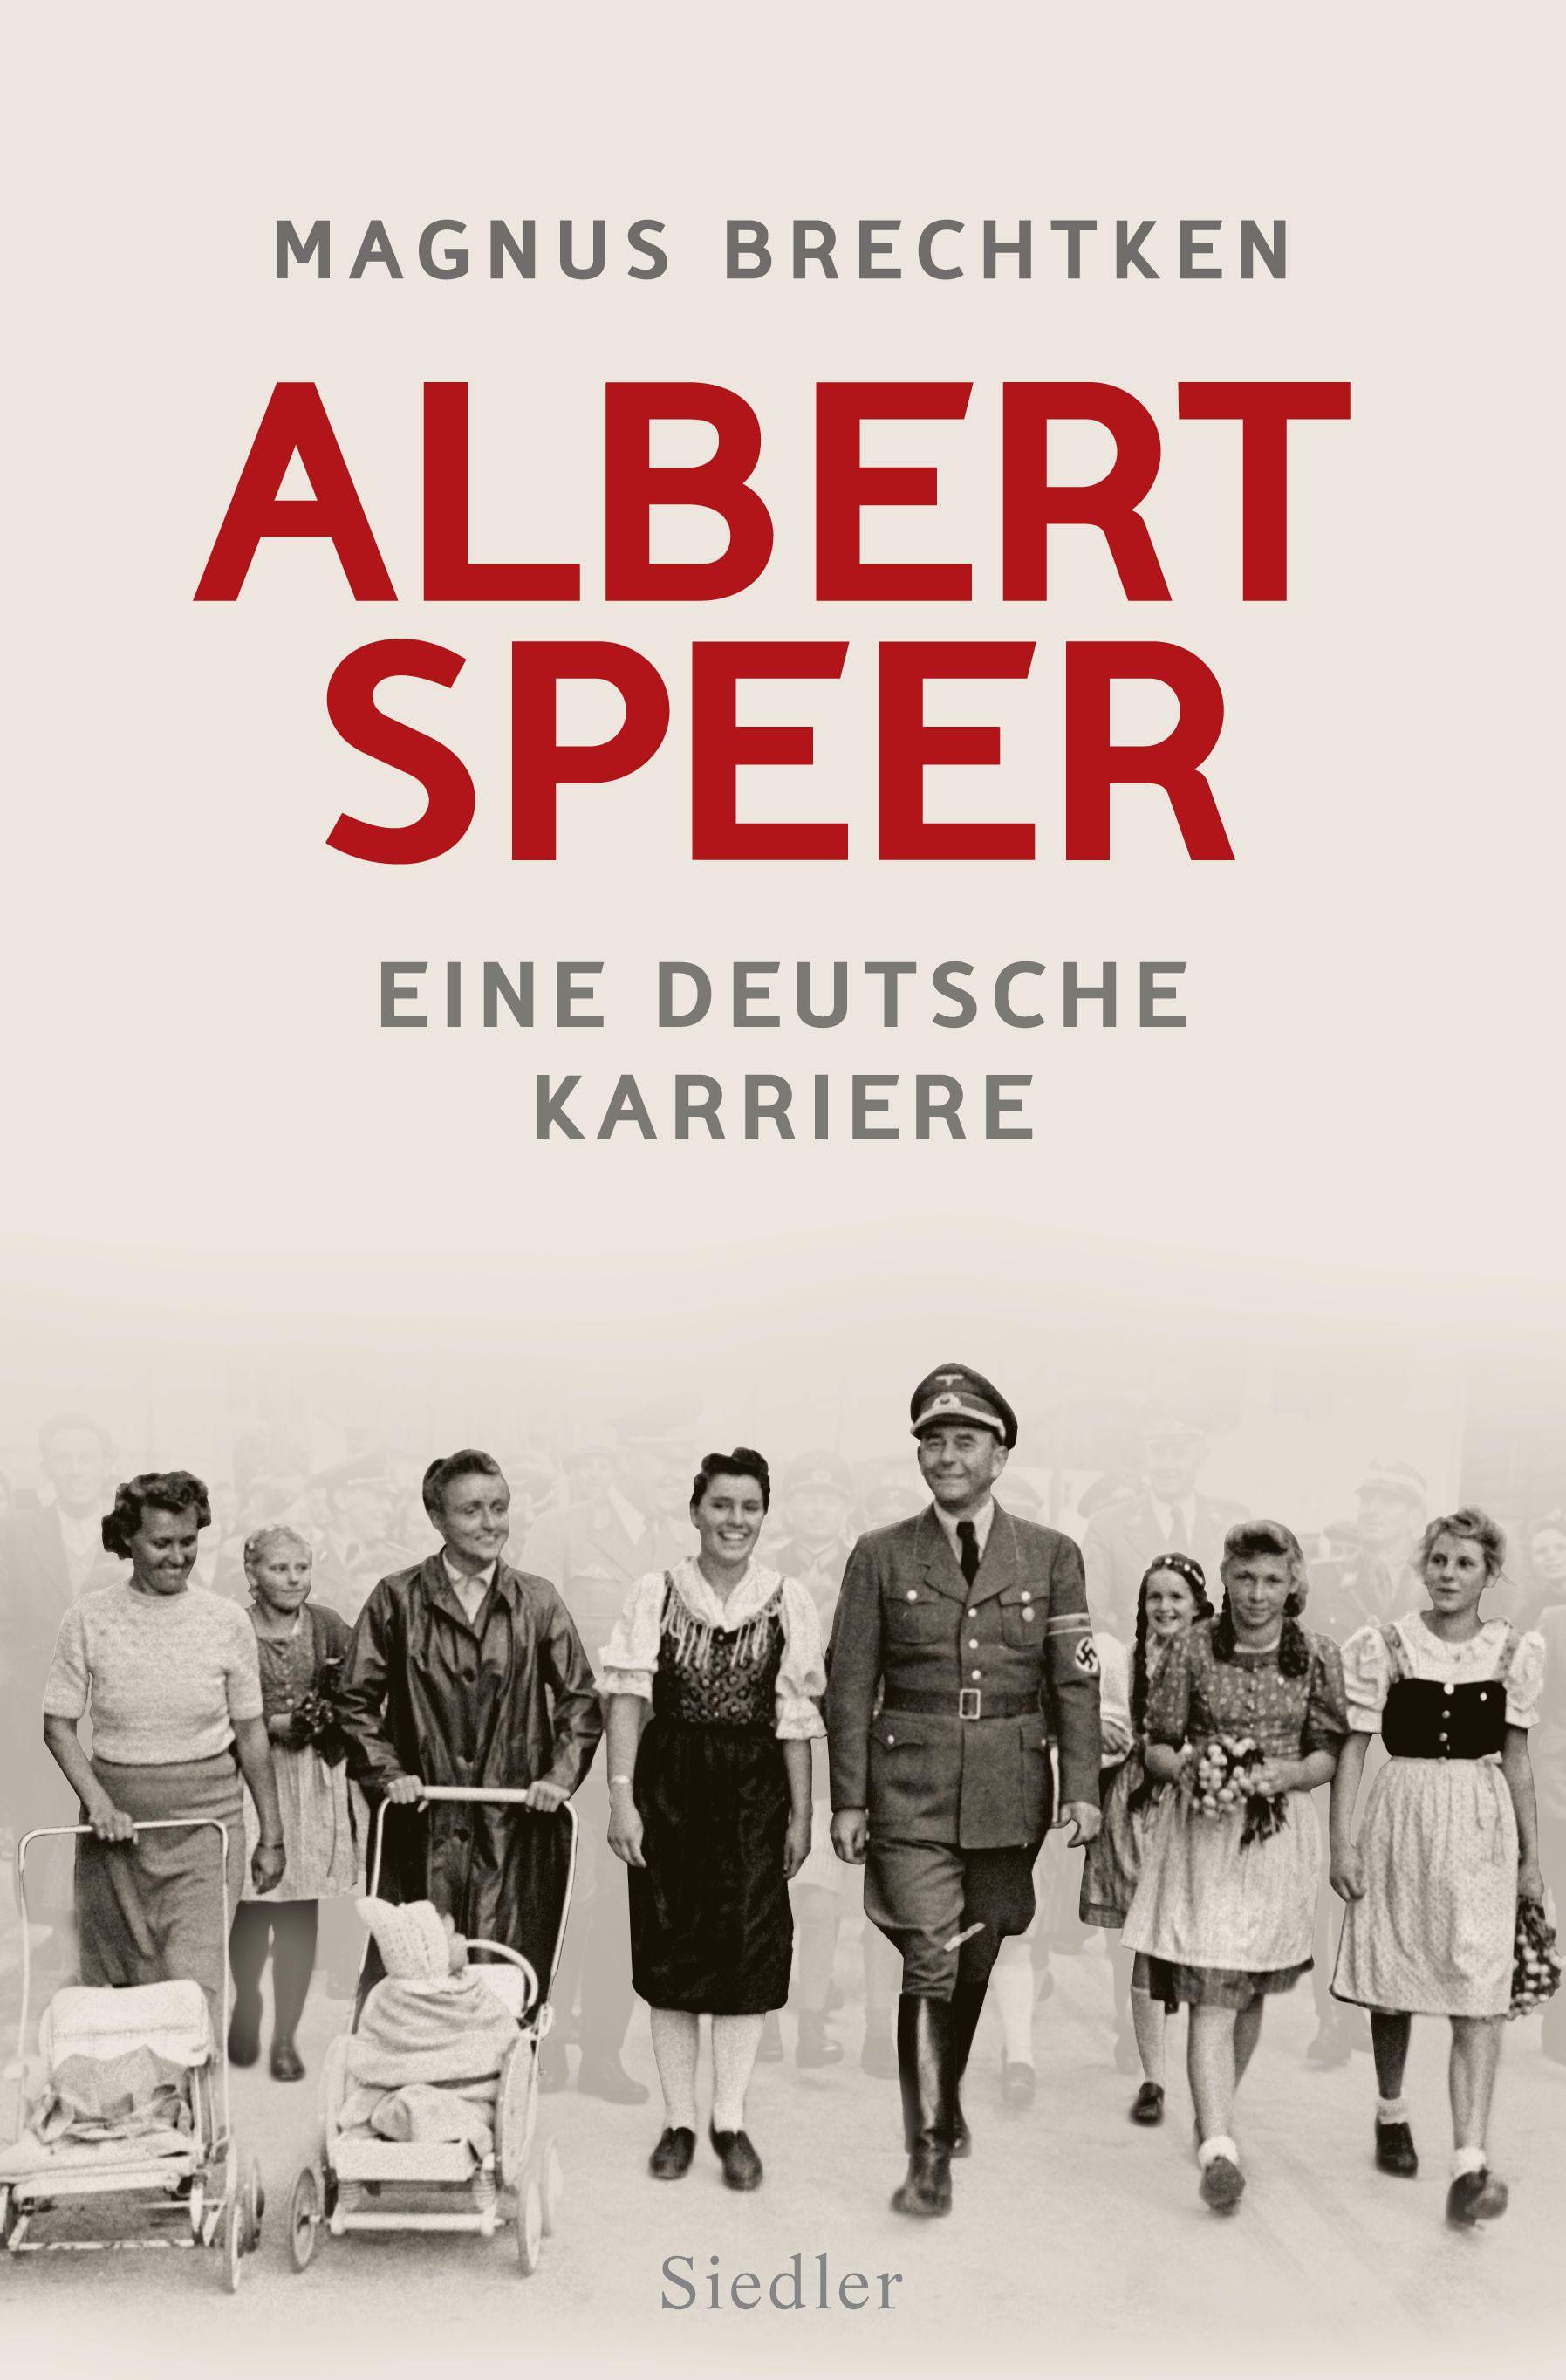 Buchcover: Magnus Brechtken: Albert Speer – Eine deutsche Karriere